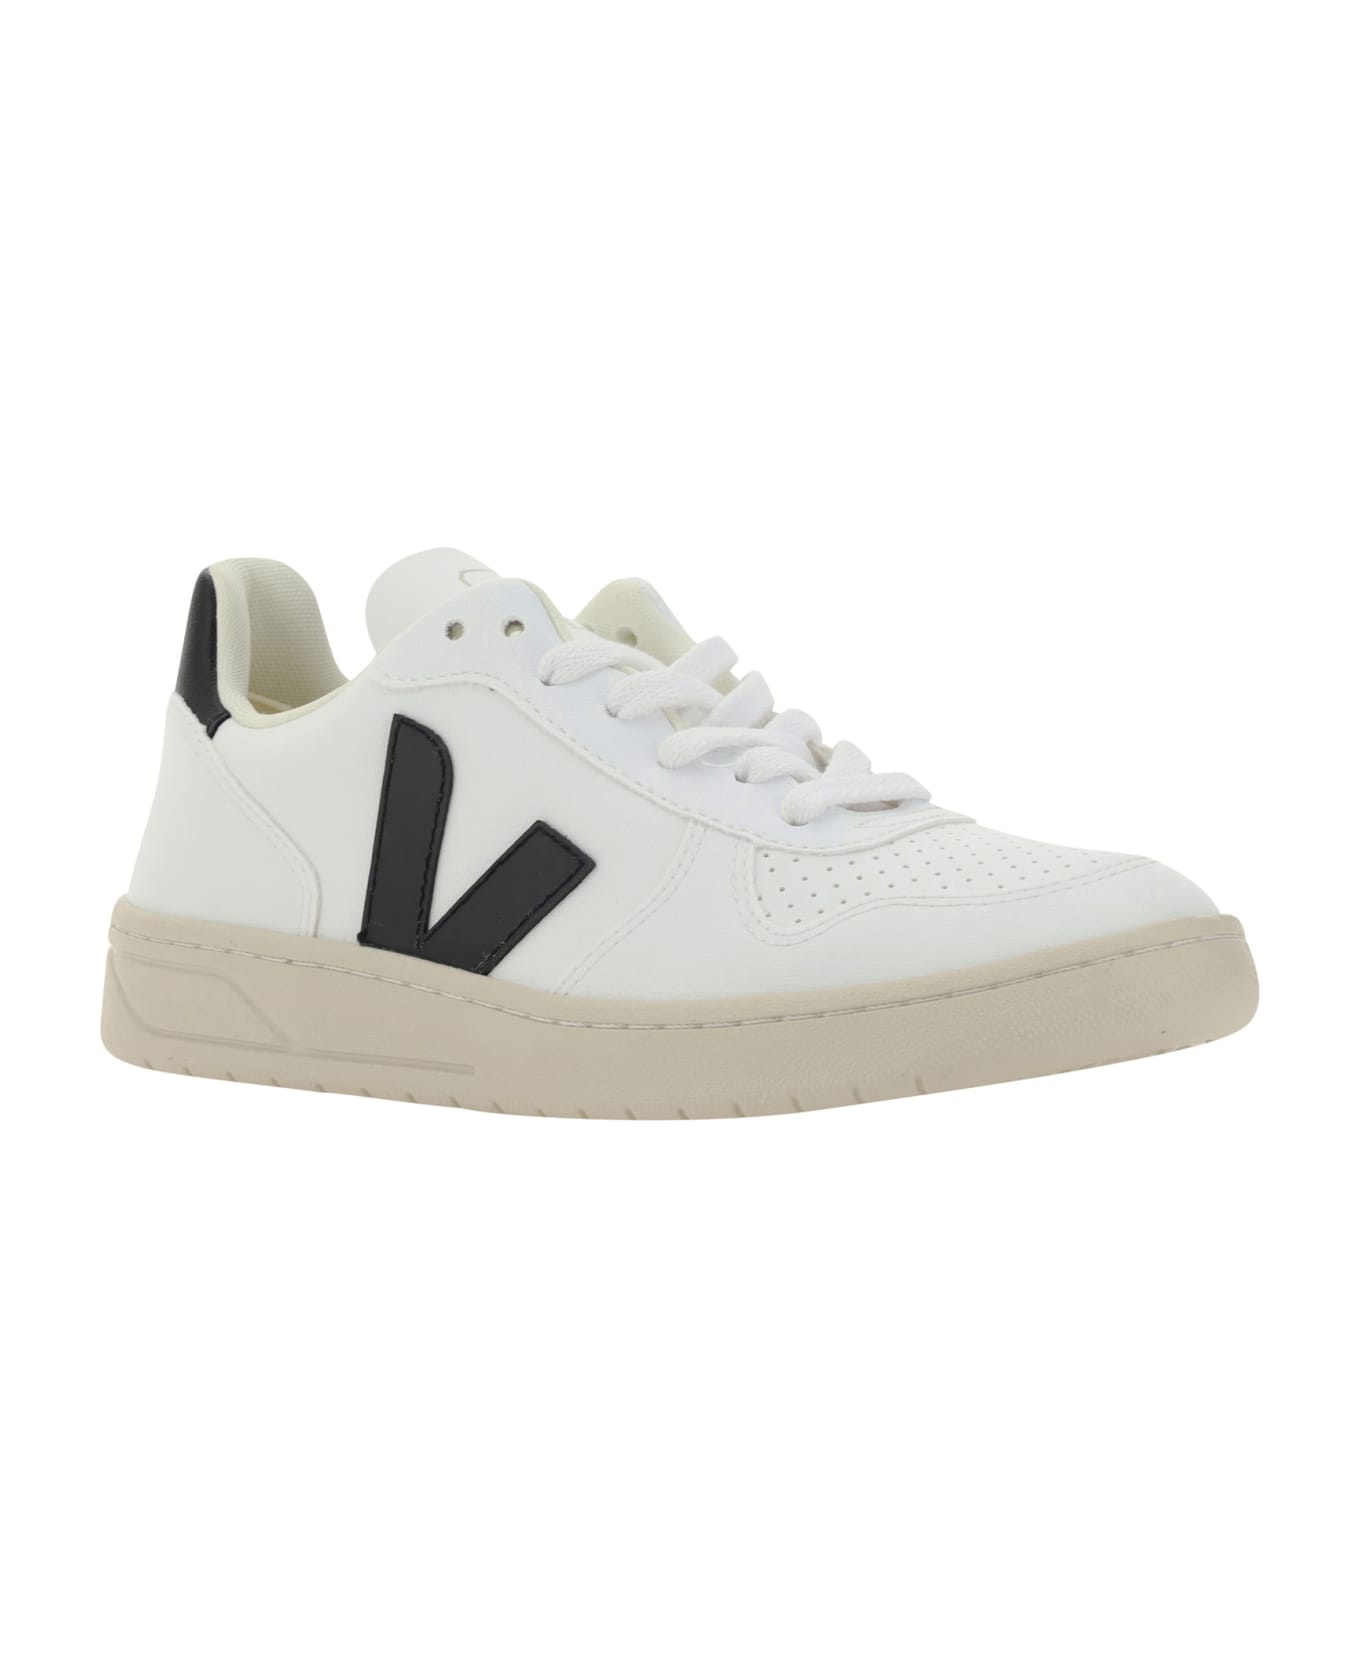 Veja Sneakers - White/black